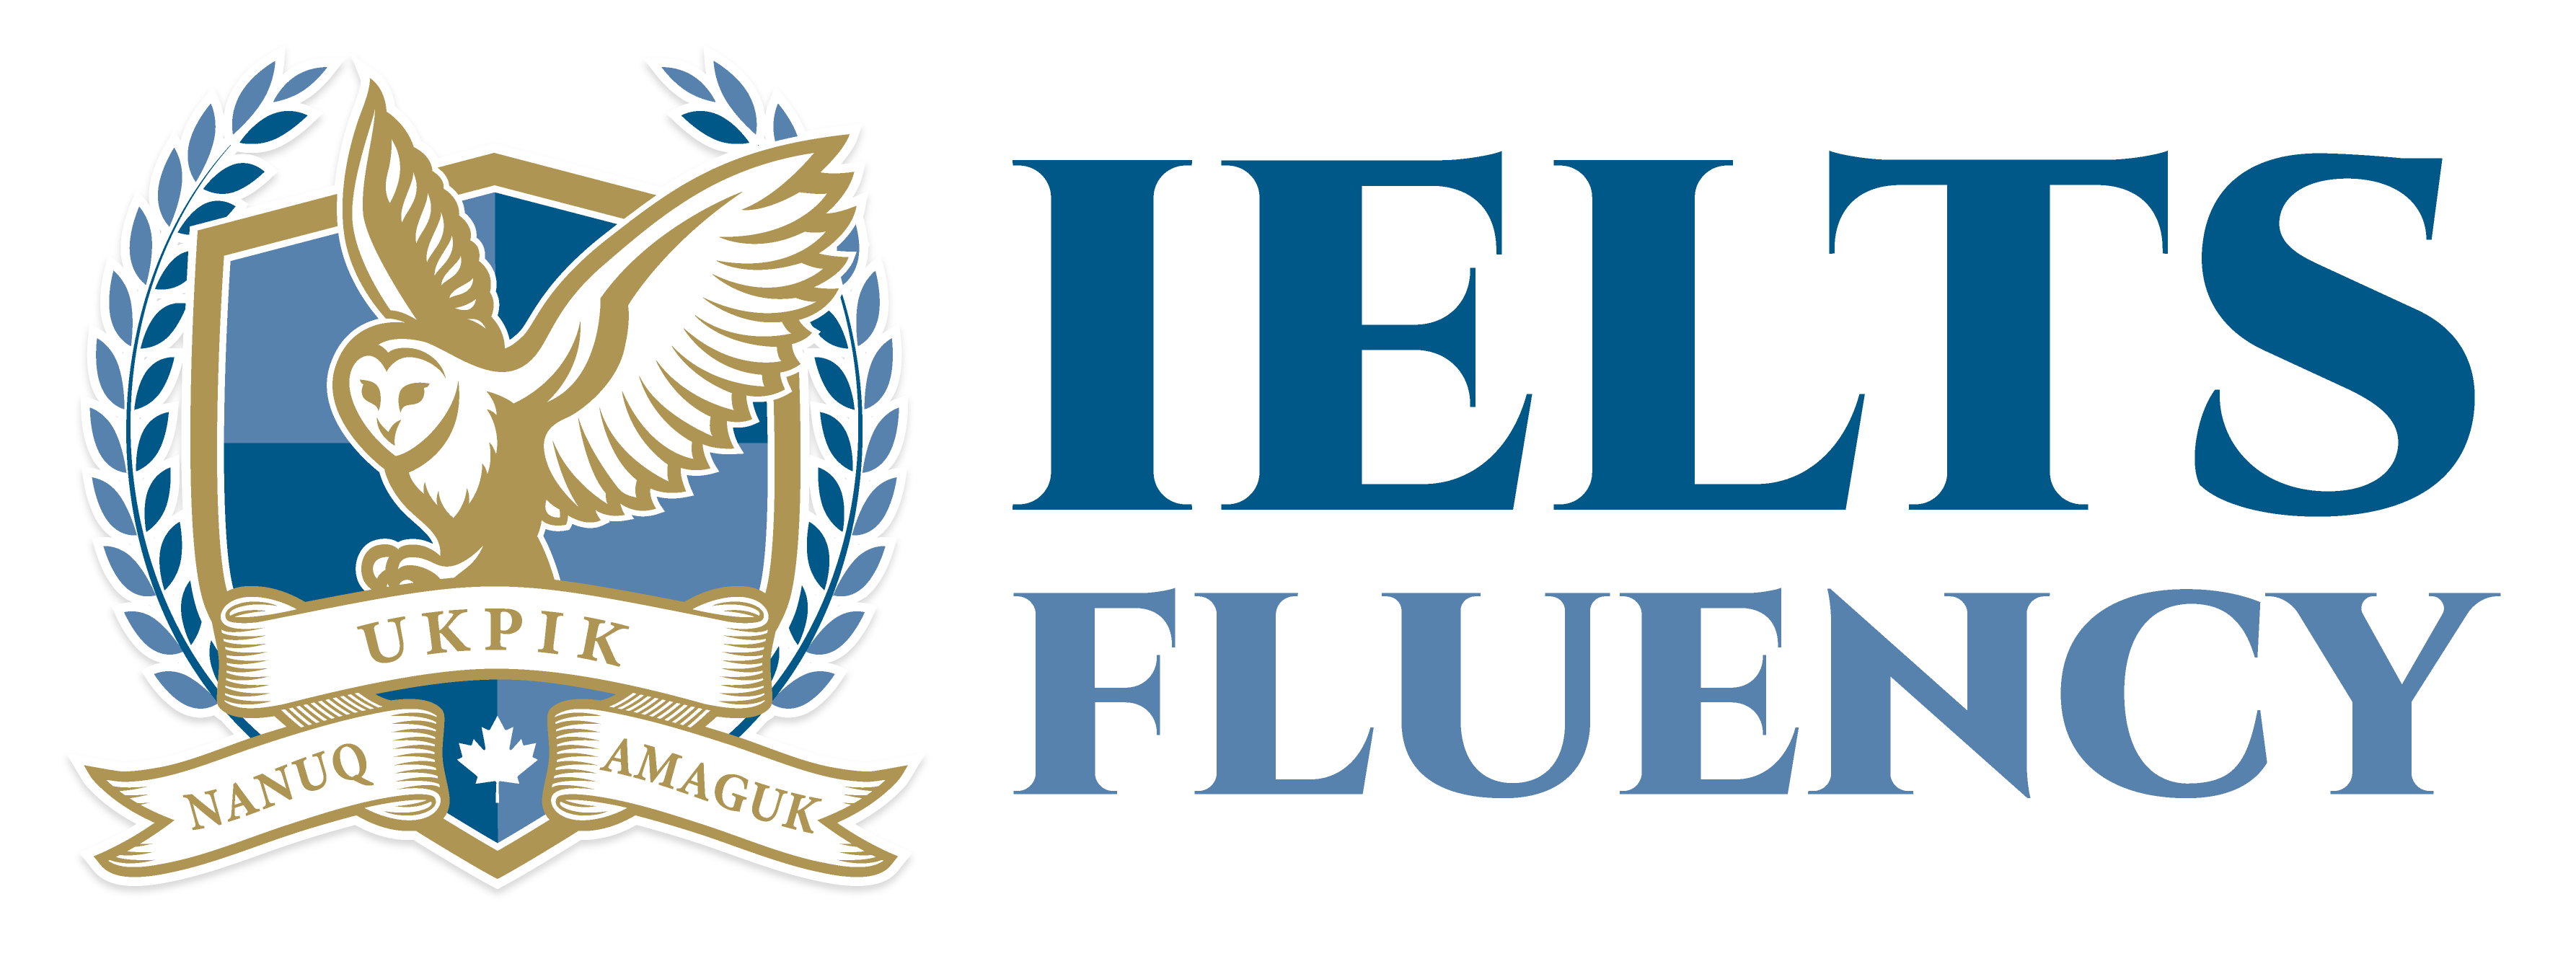 IELTS Fluency Logo 2